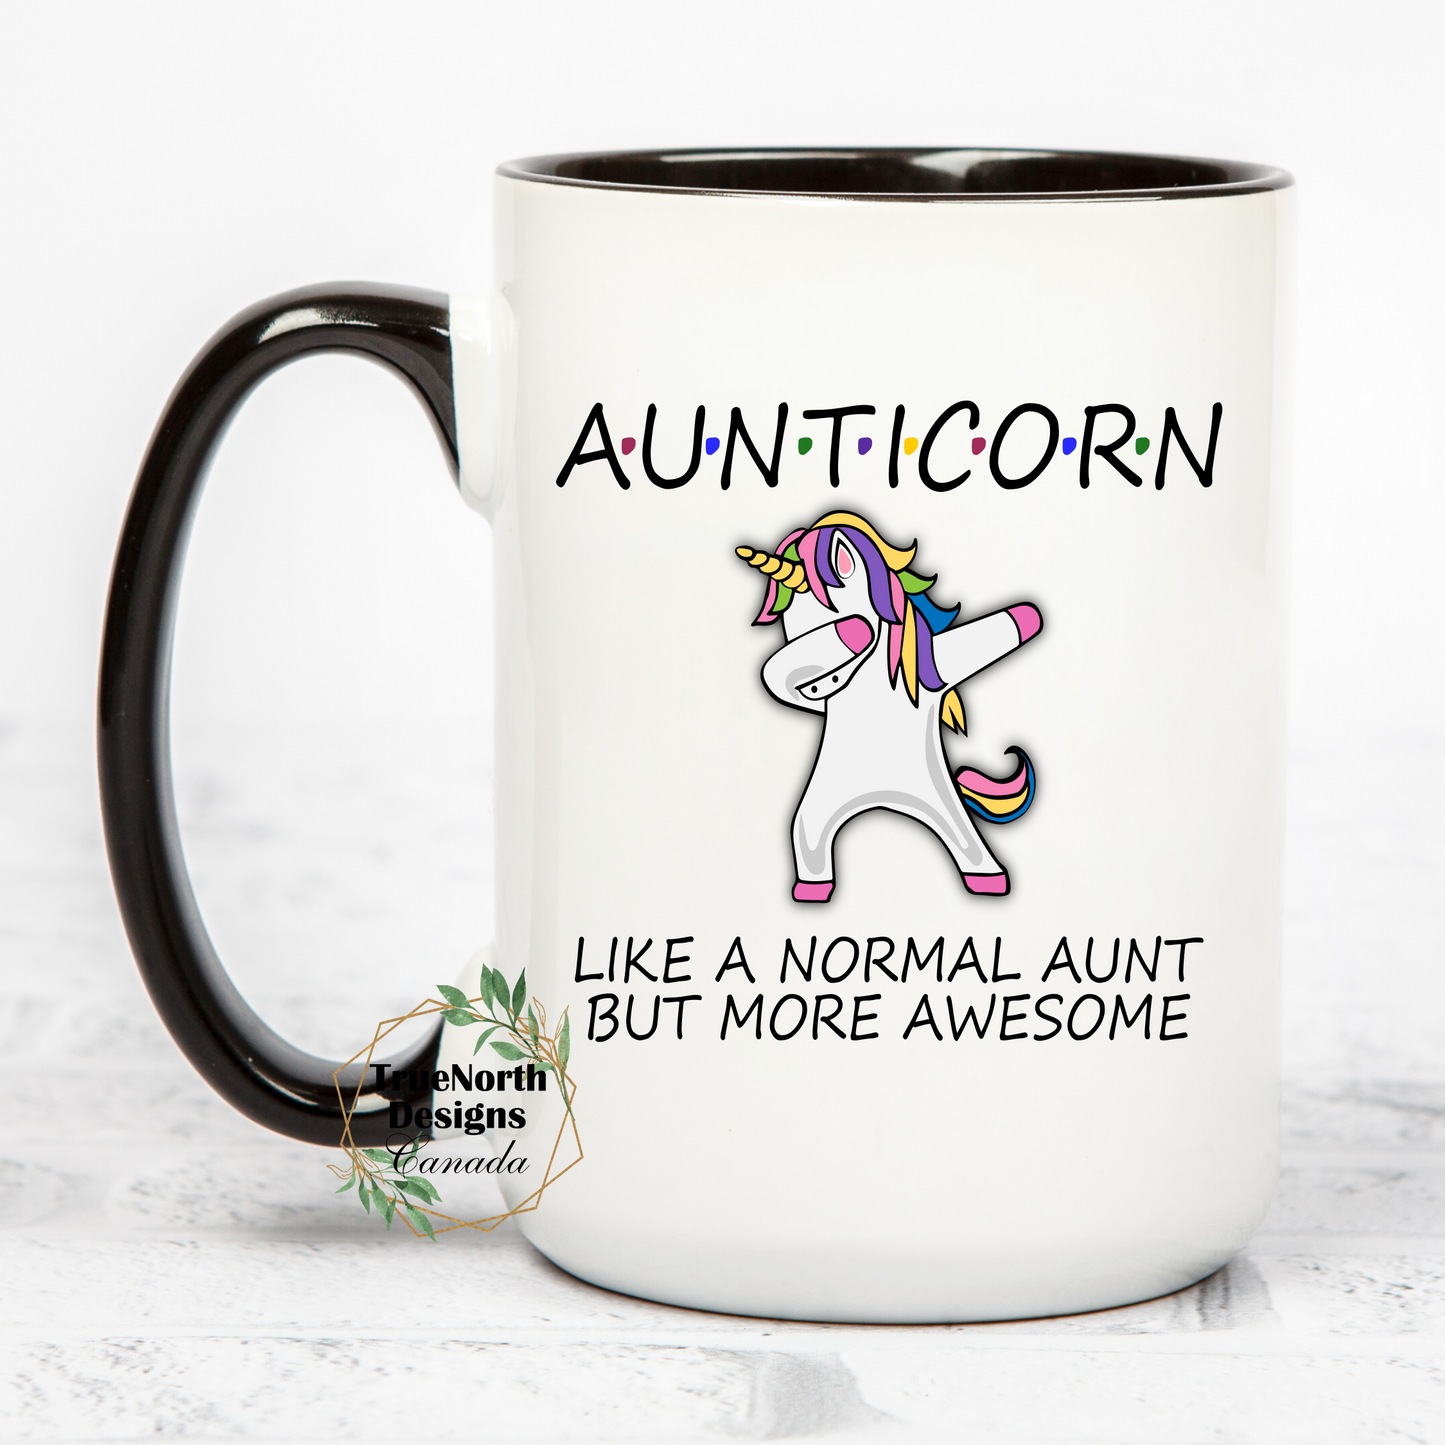 Amazing Aunticorn Mug